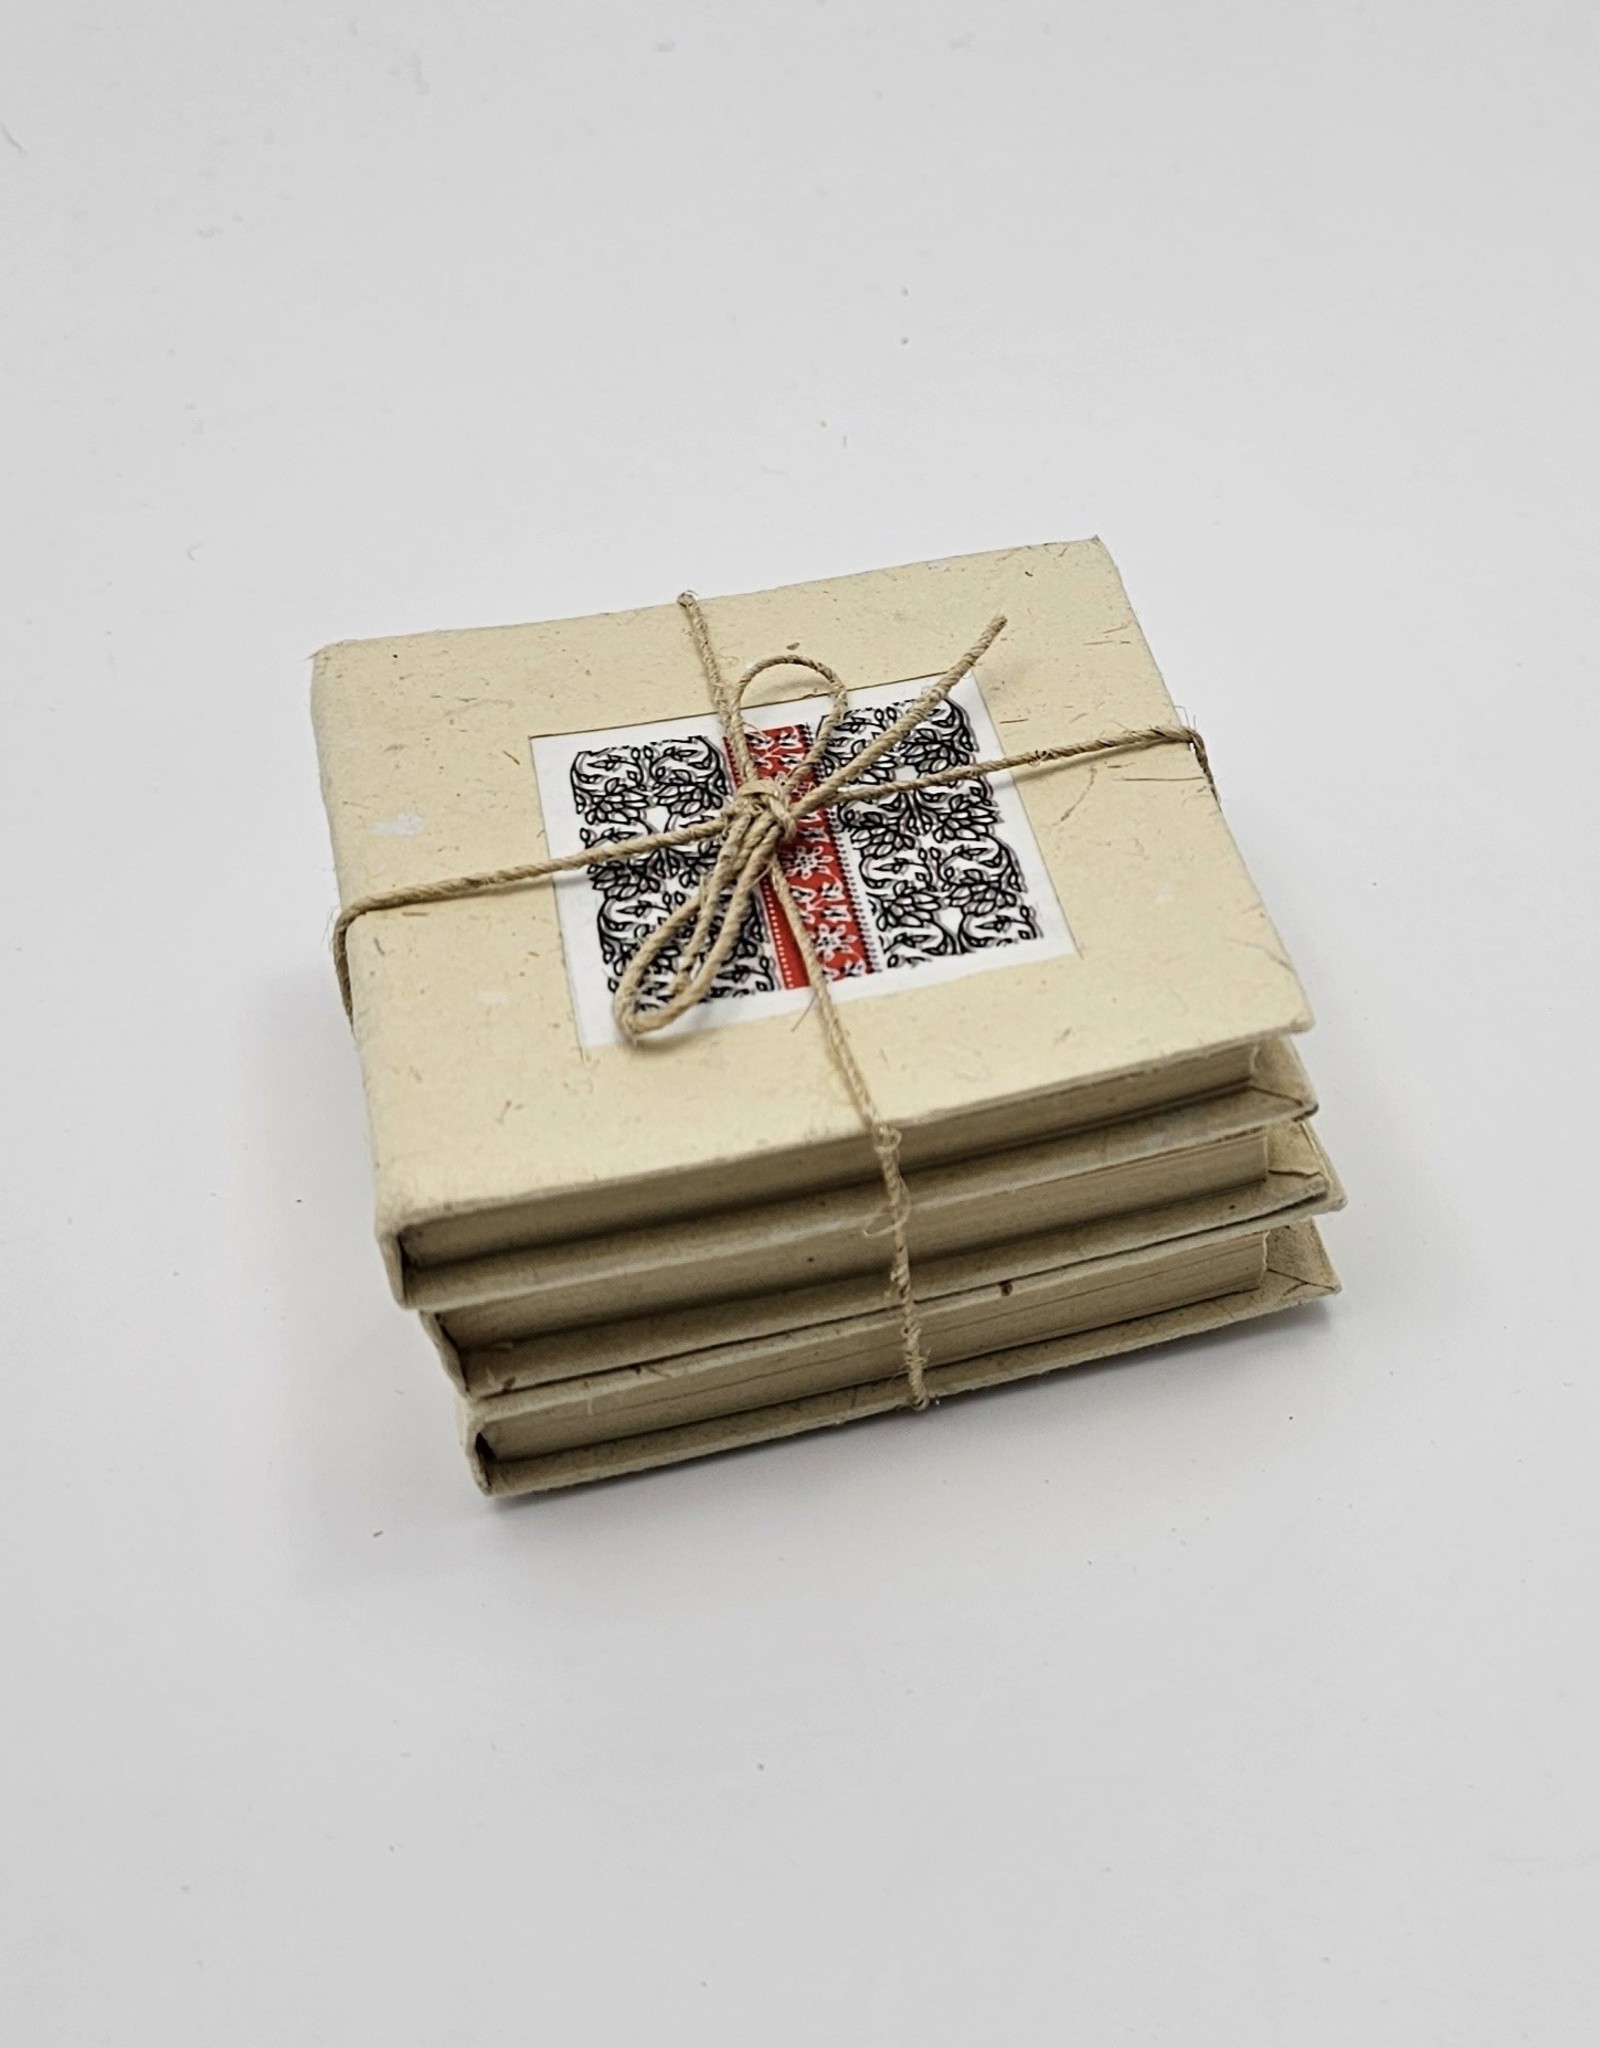 Ten Thousand Villages Canada Small Handmade Paper Journal / Notebook